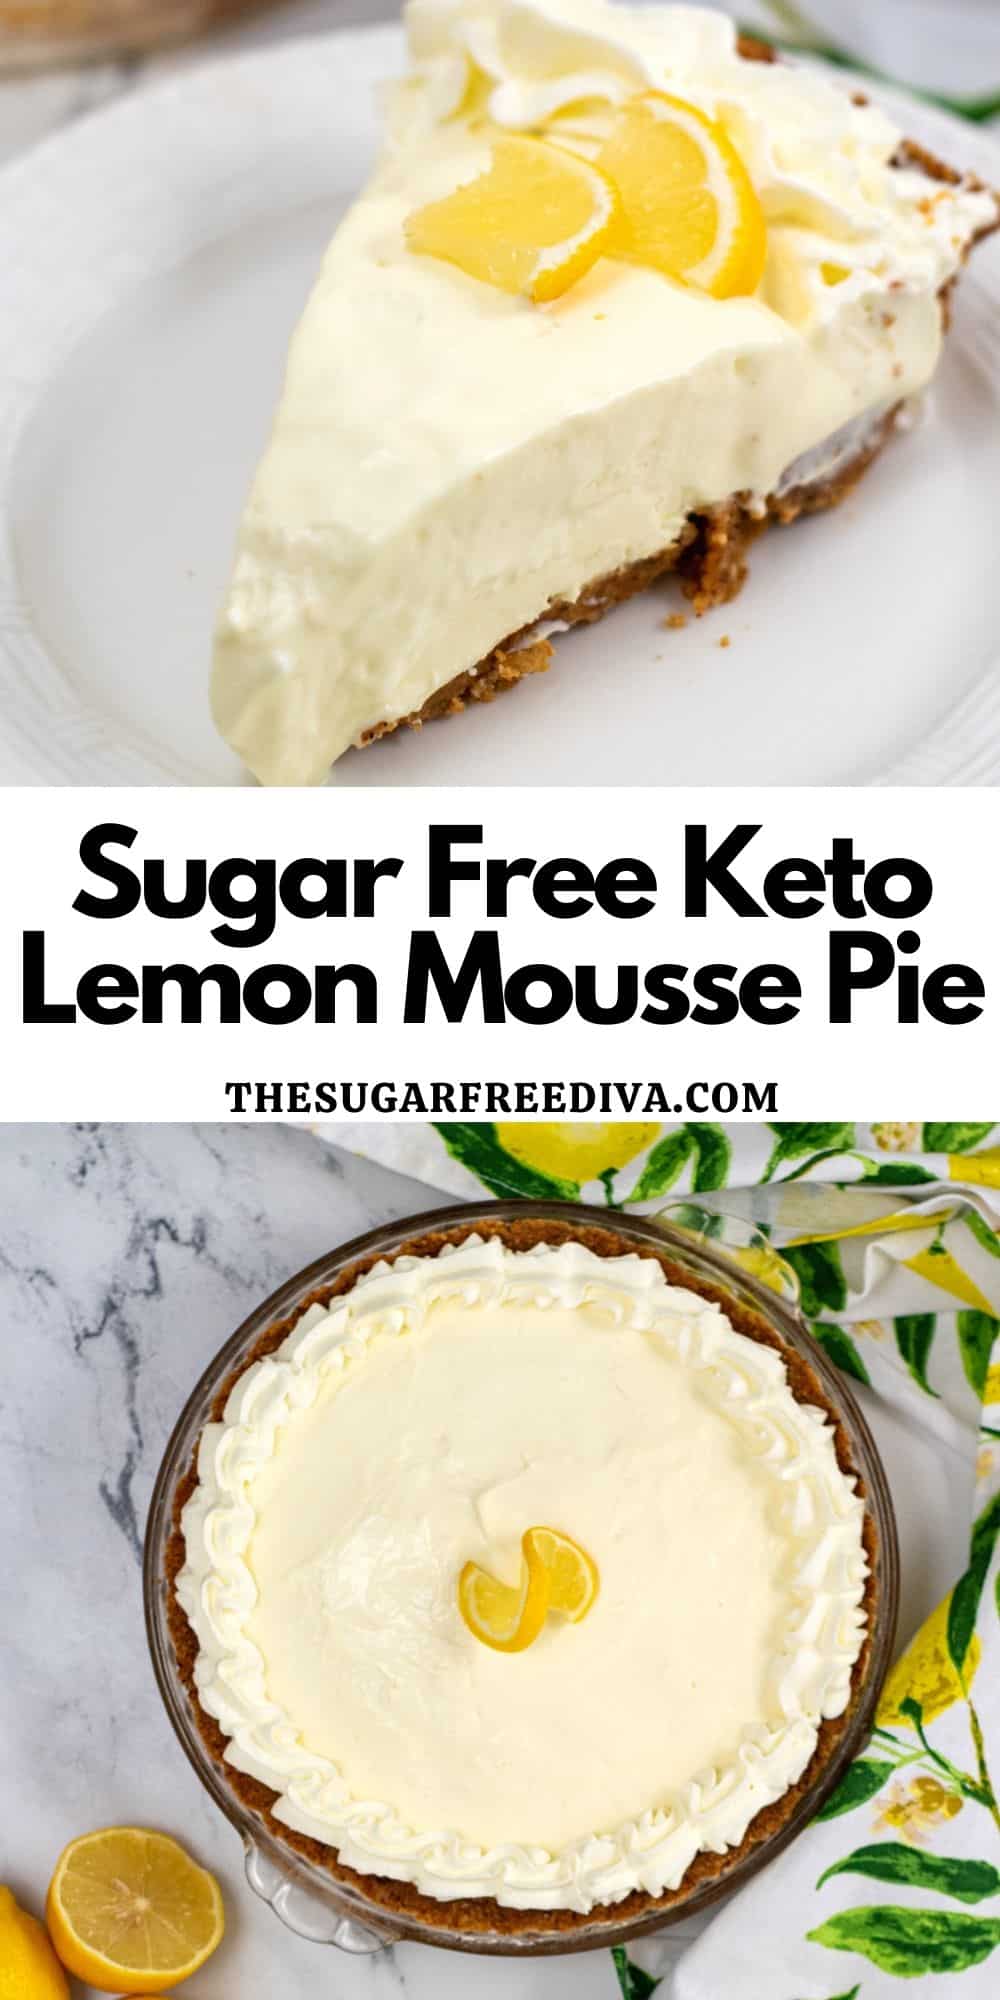 Sugar Free Keto Lemon Mousse Pie